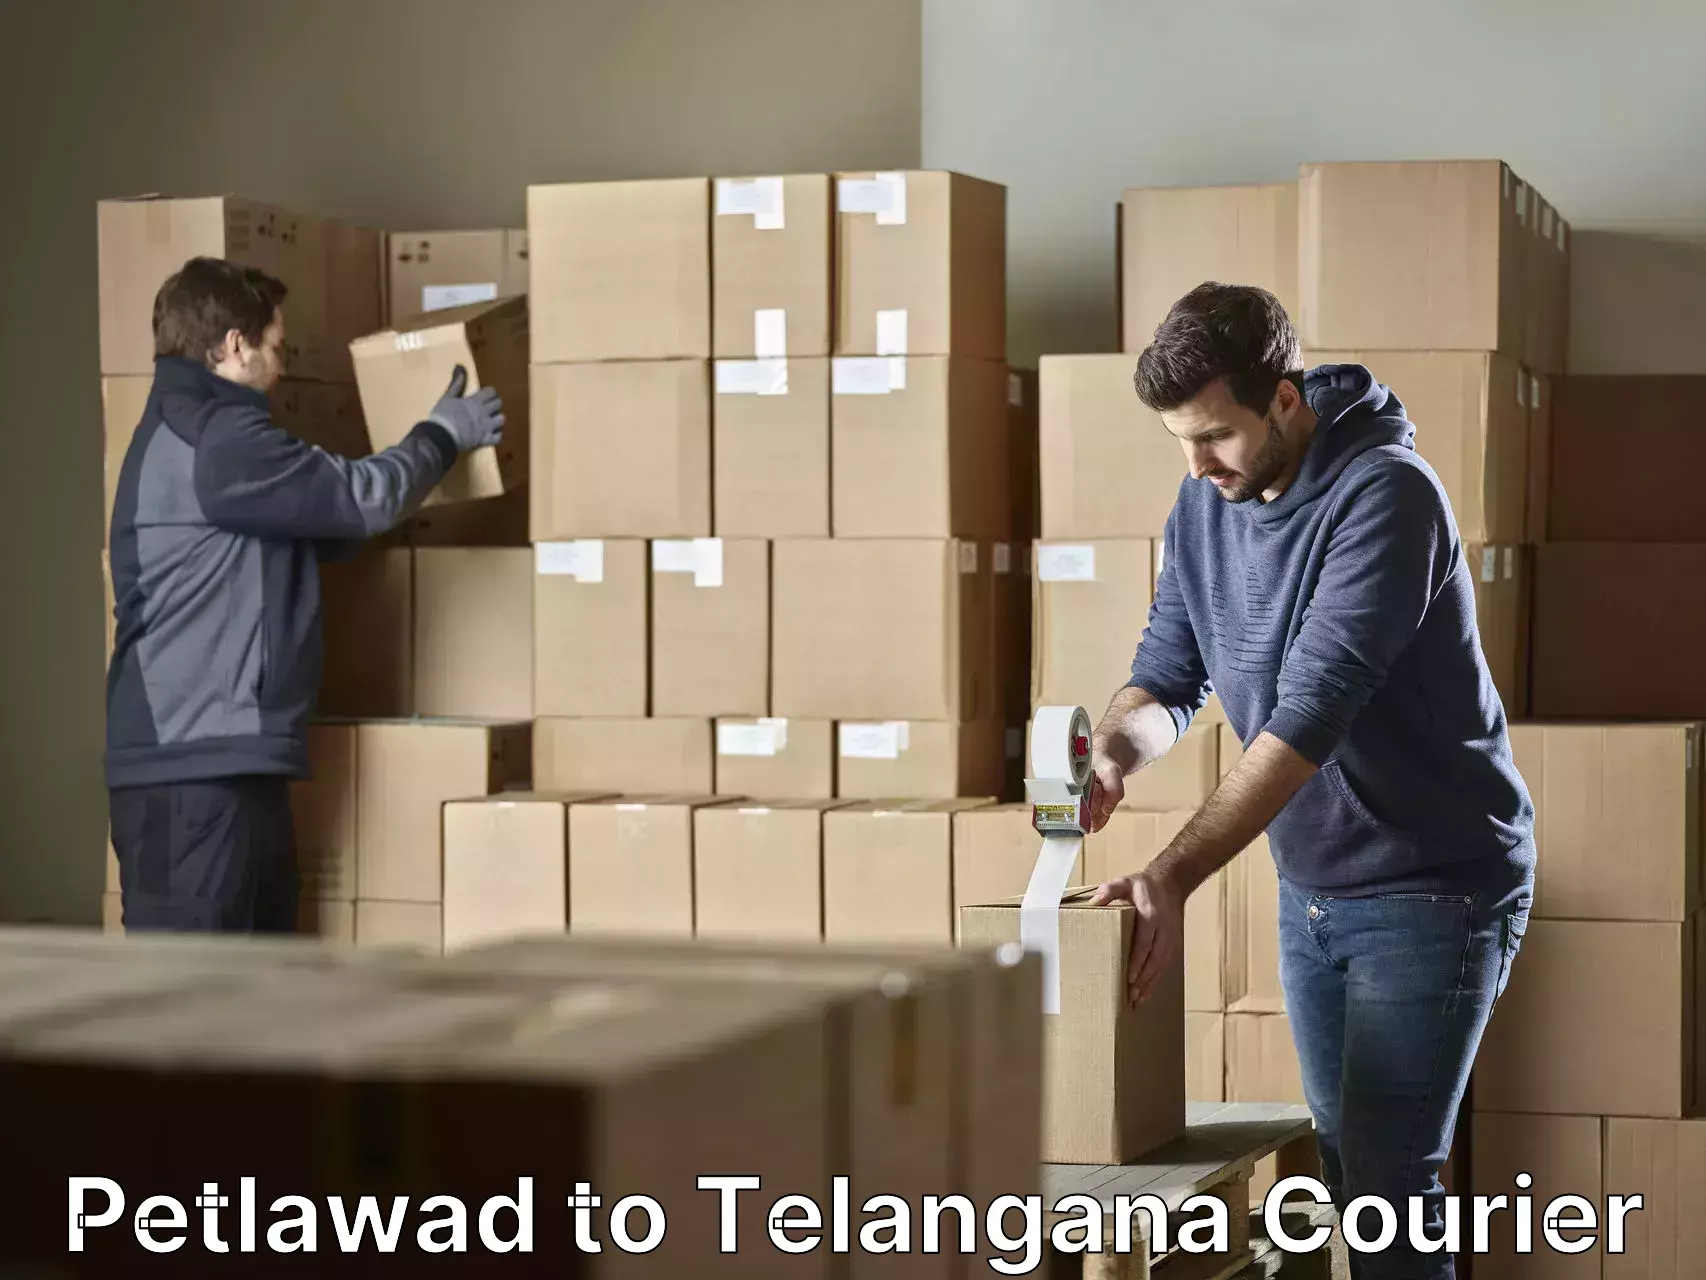 Furniture transport specialists Petlawad to Telangana